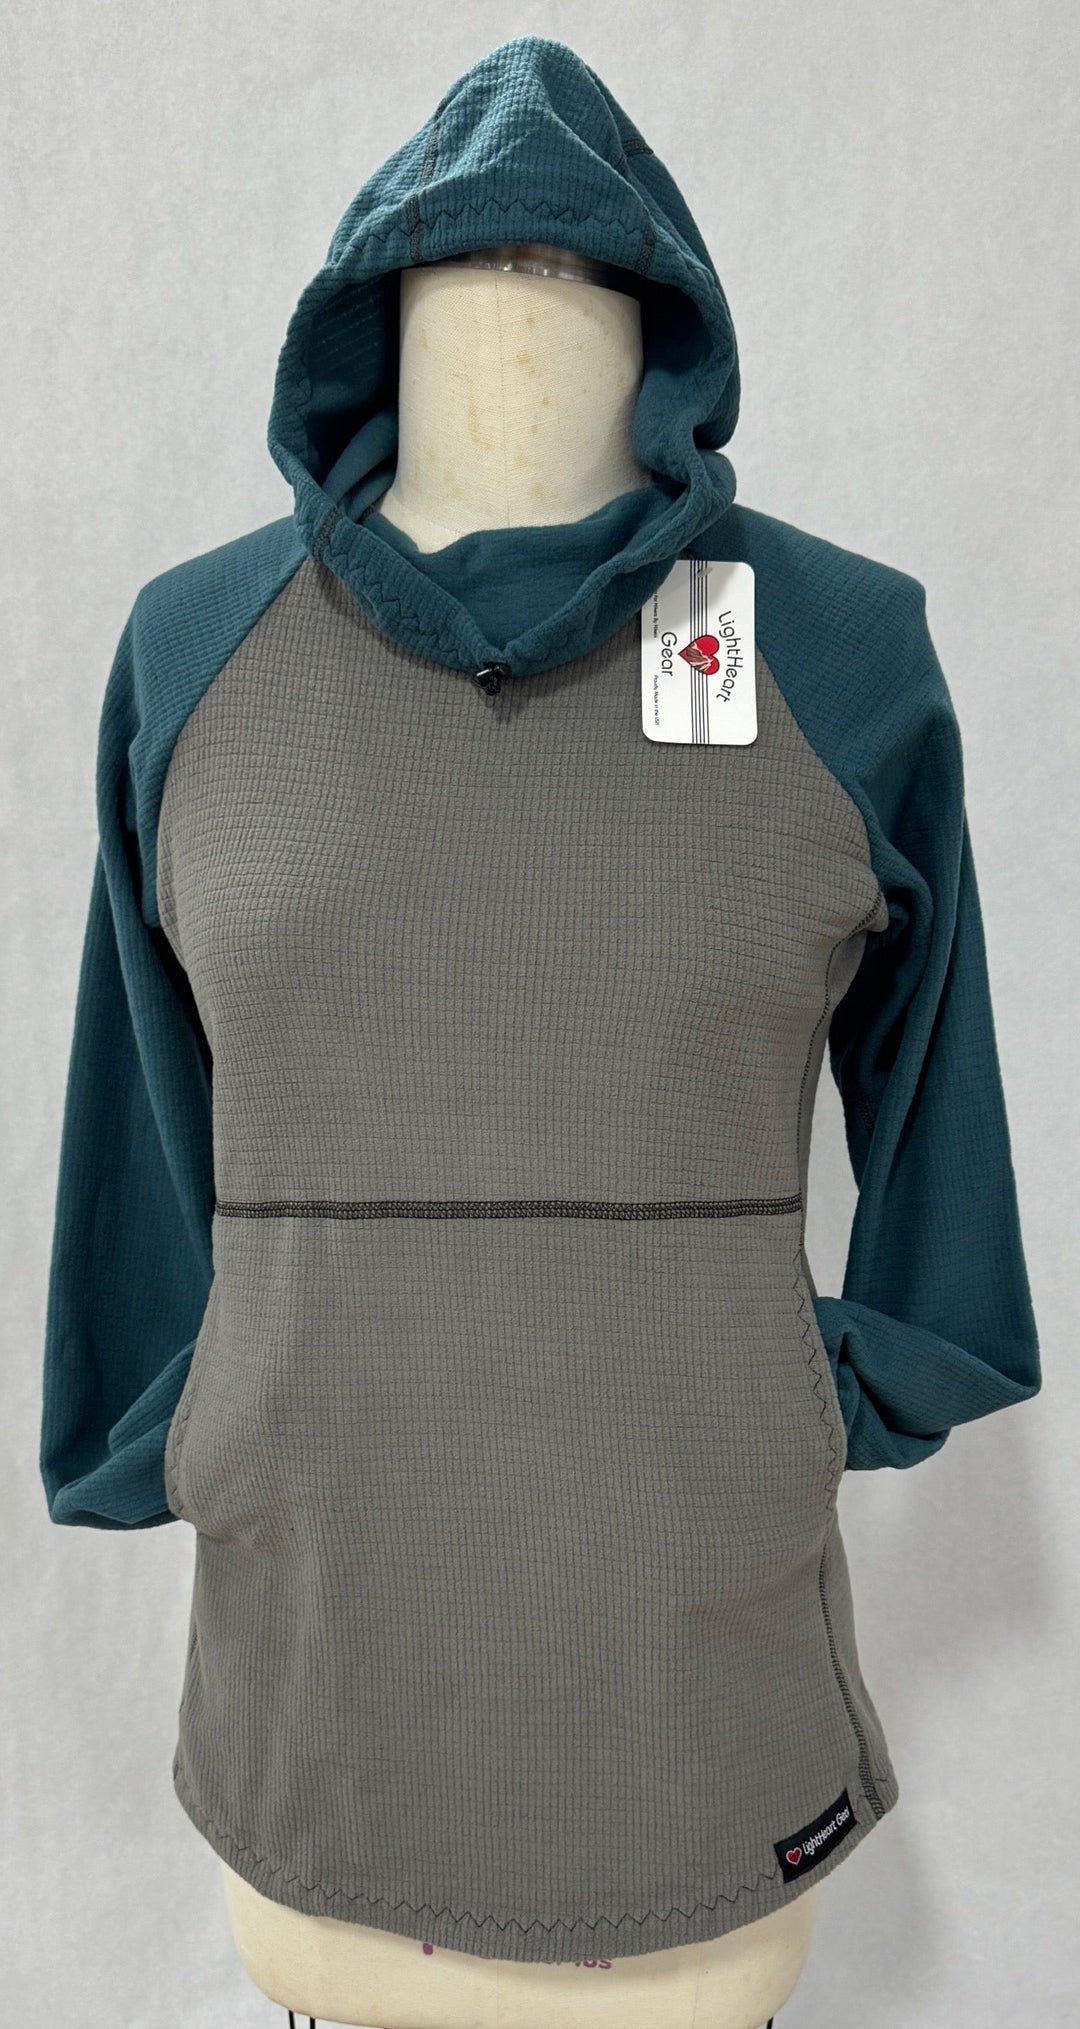 Women's Fleece Hoodie -  Gray w/ Moroccan sleeves and hood